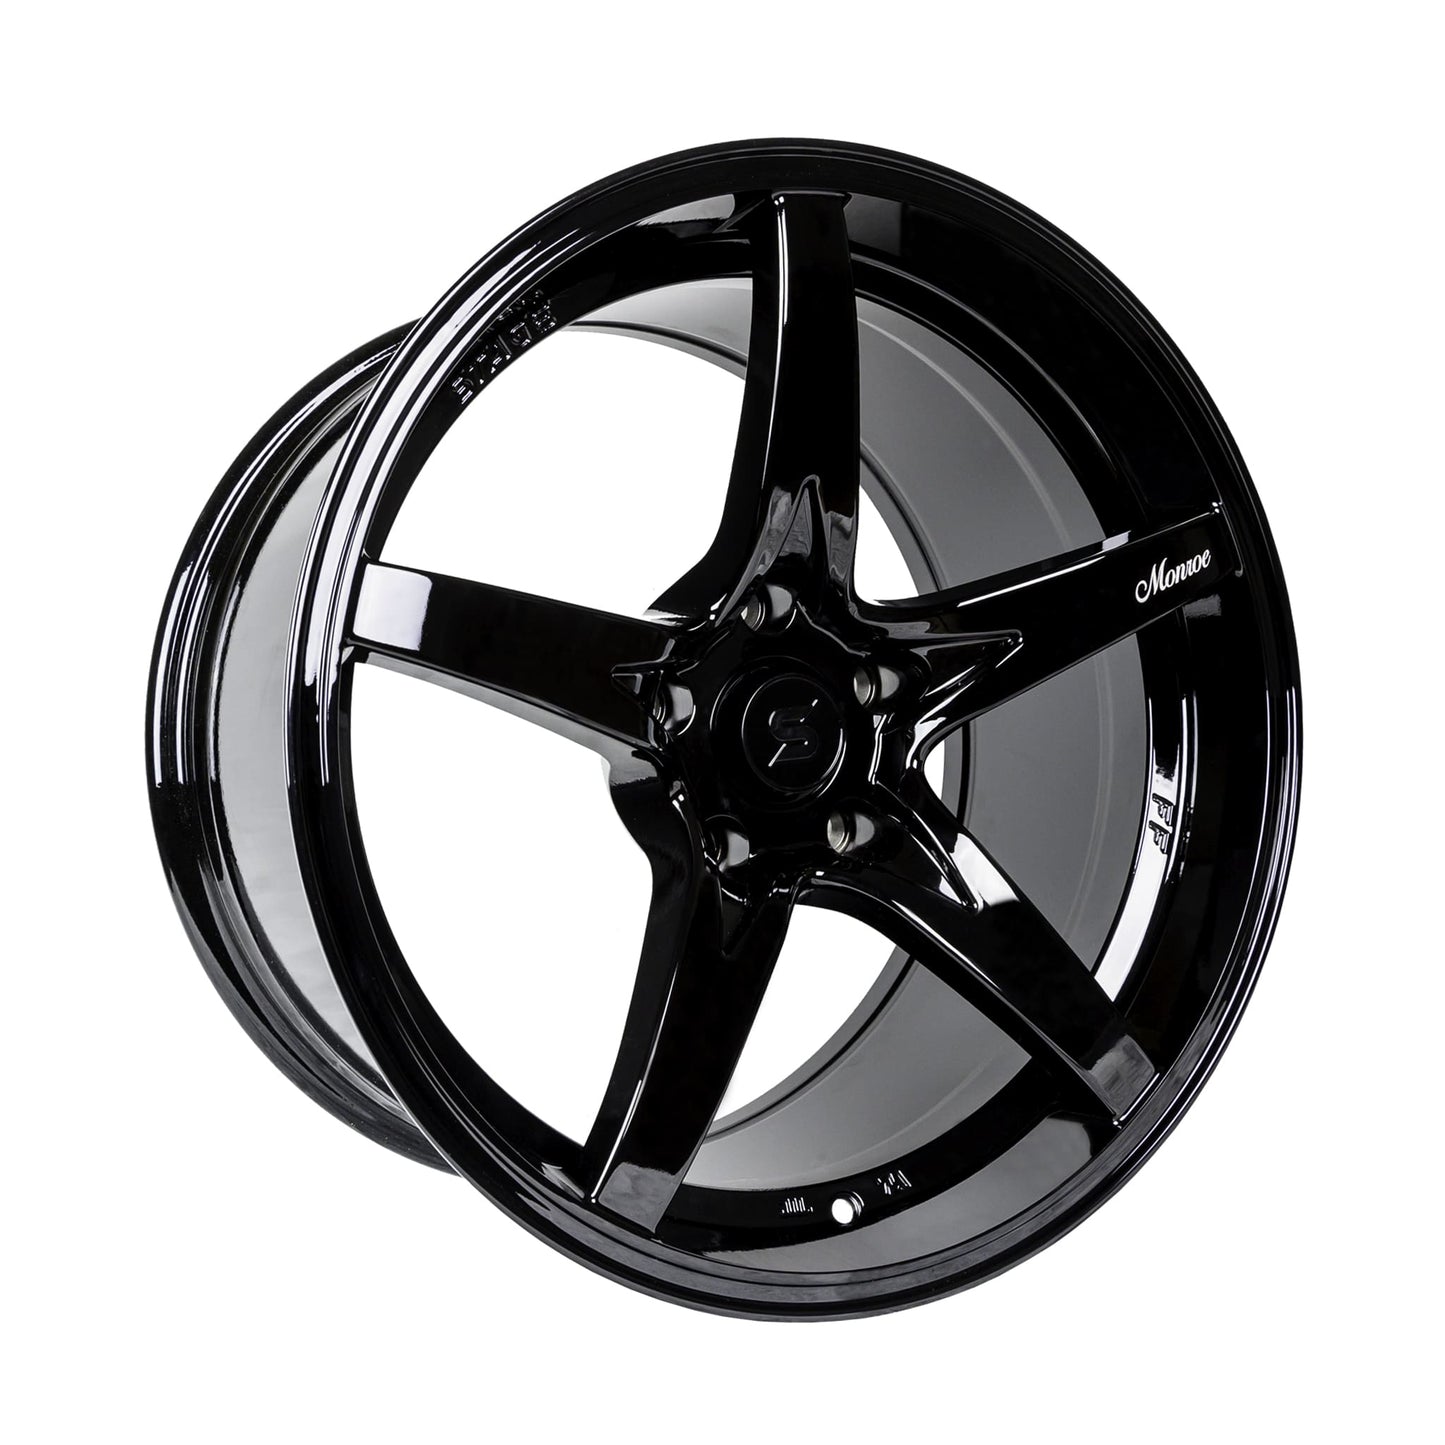 Stage Wheels Monroe 18x9 +0mm 5x114.3 CB: 73.1 Color: Black